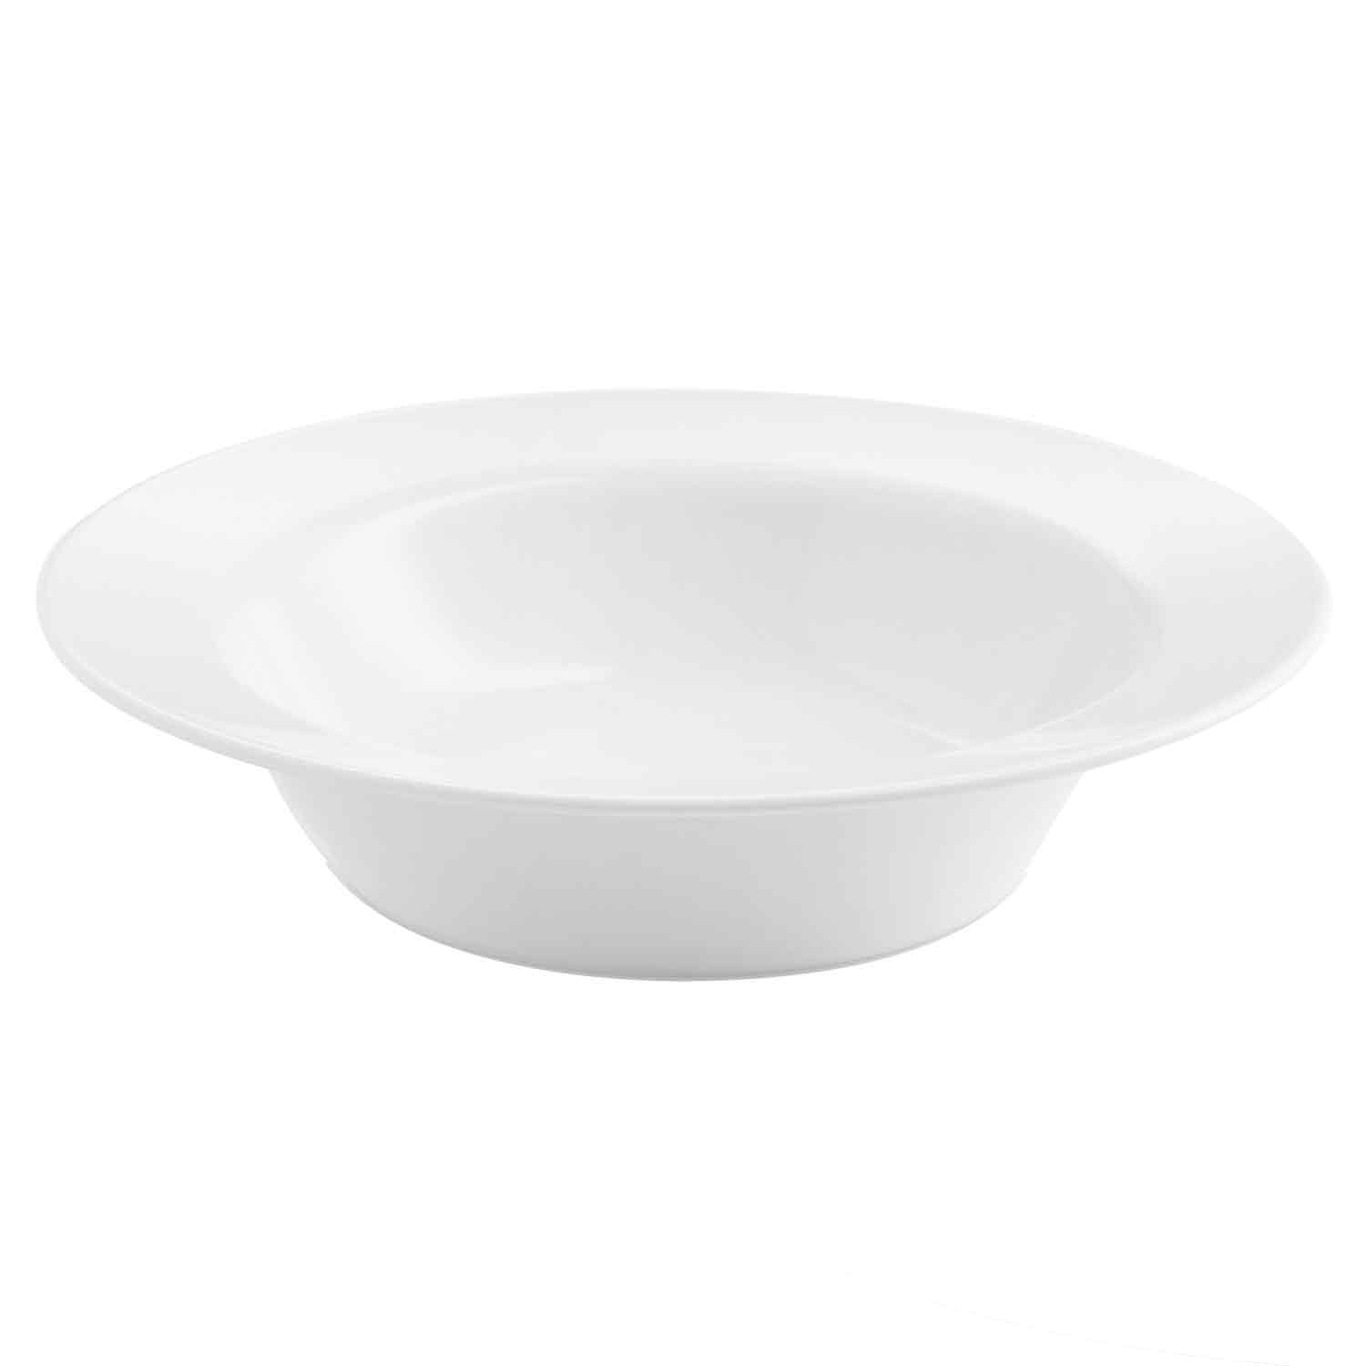 Enso Soup Plate 22 cm, White